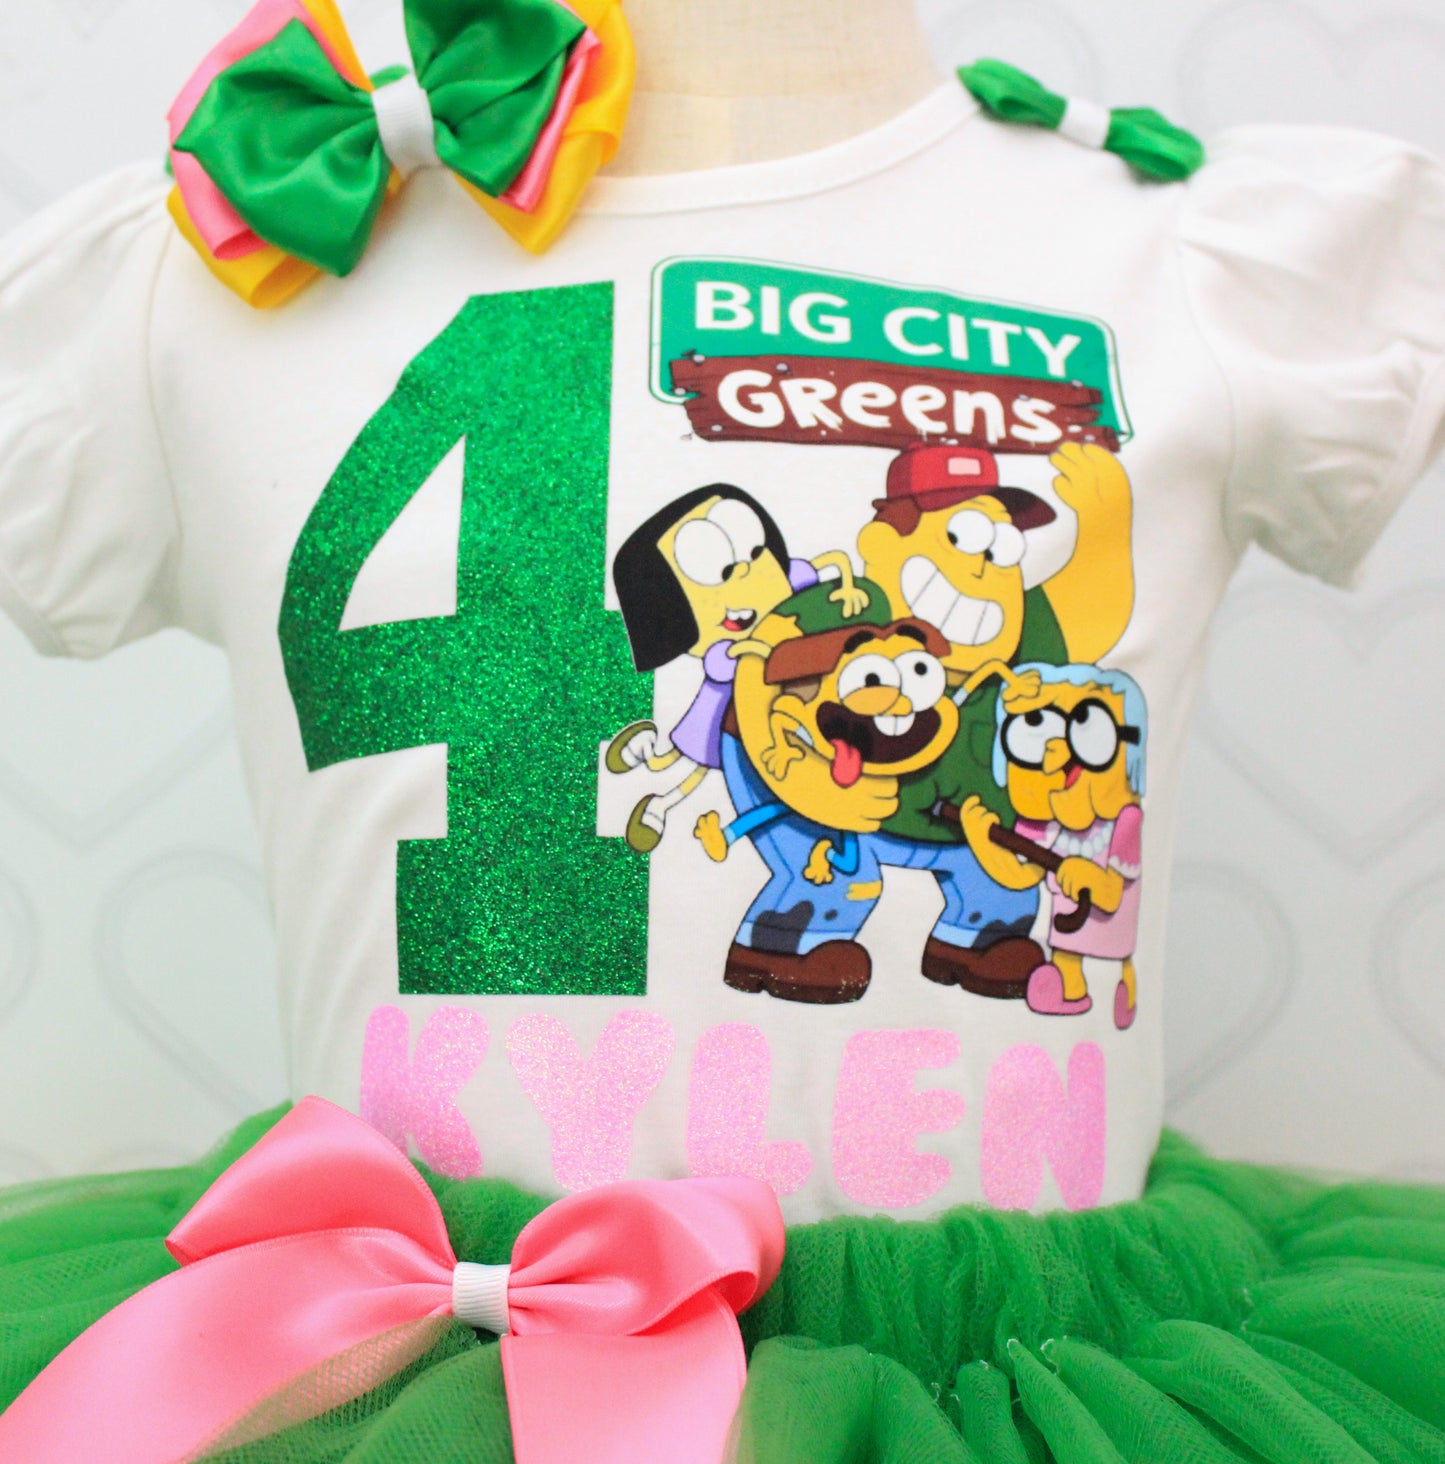 Big City Greens tutu set-Big City Greens outfit-Big City Greens dress-Big City Greens birthday